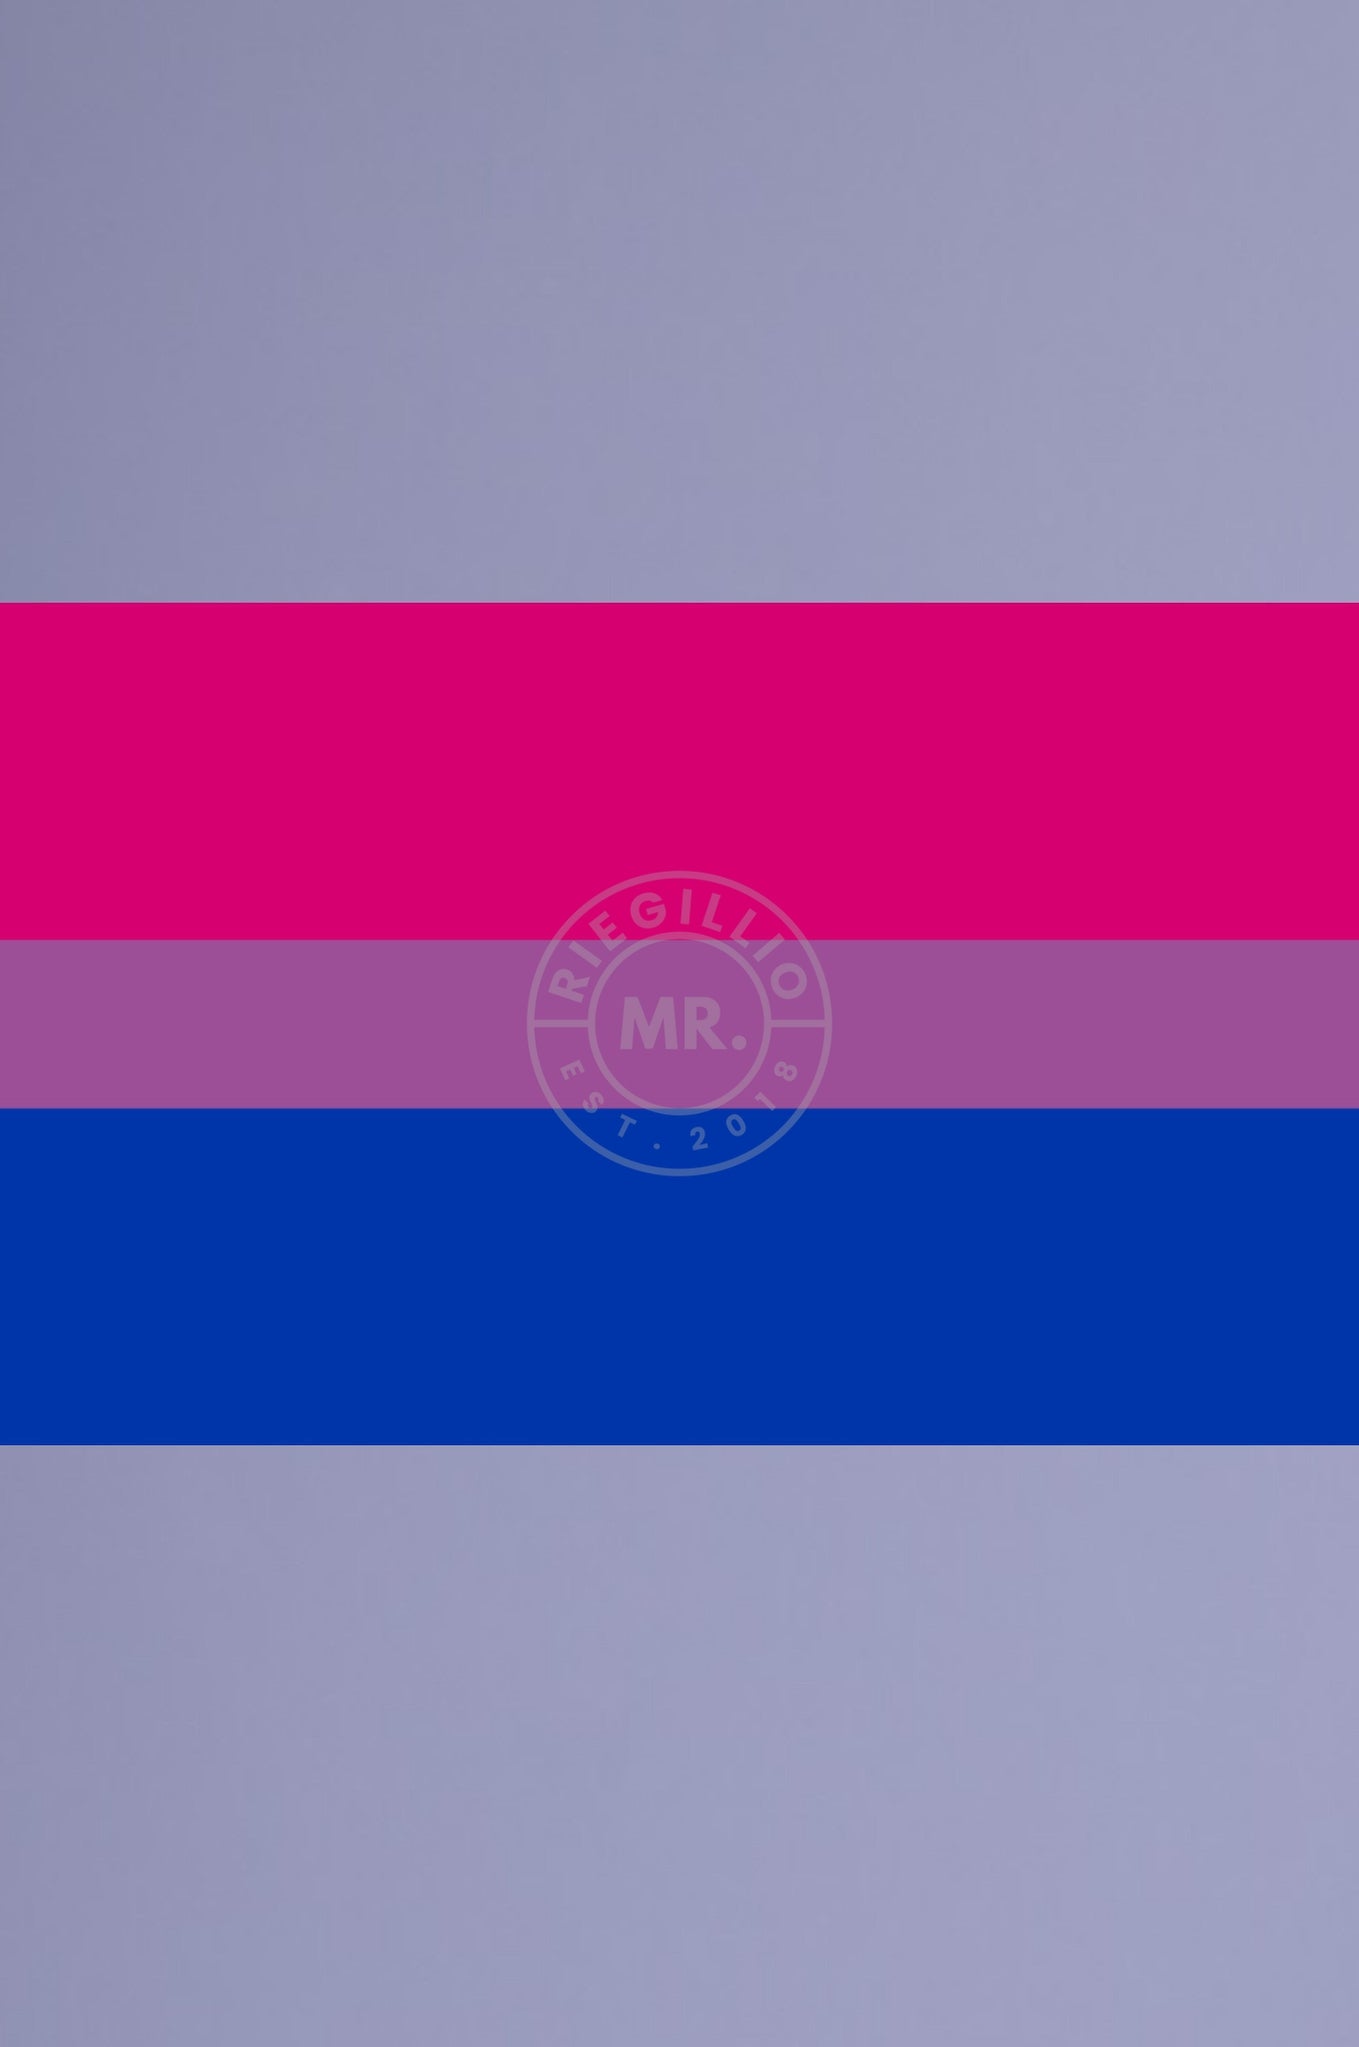 Bisexual Pride Flag 90cm x 150cm-at MR. Riegillio